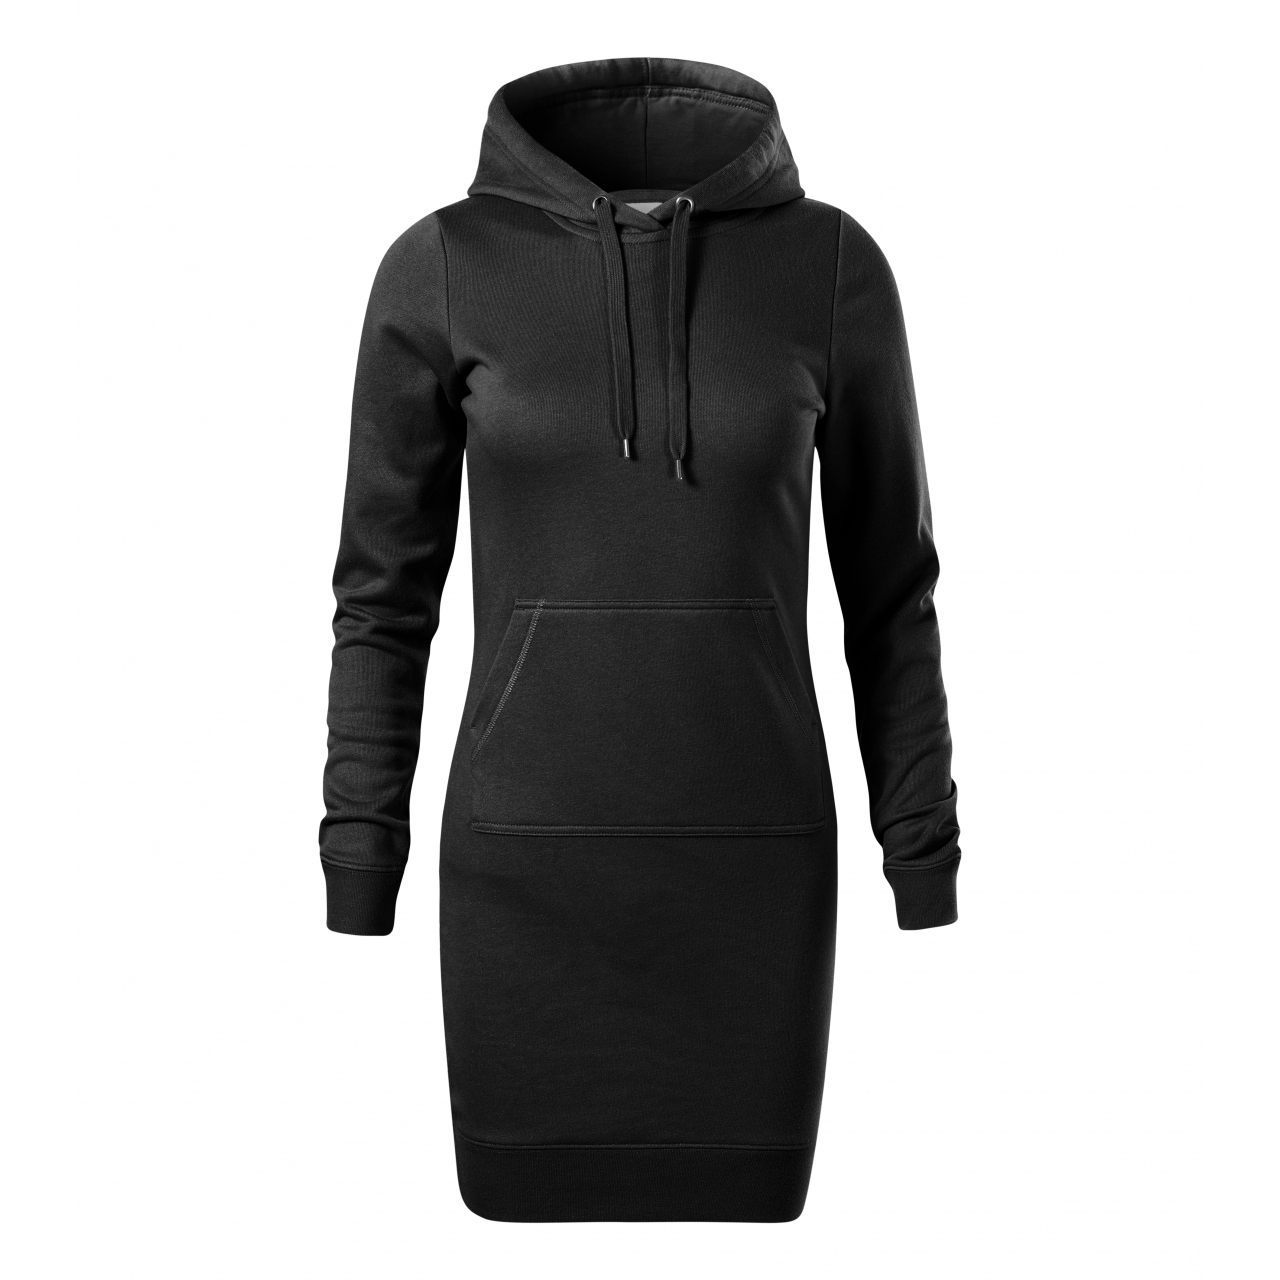 Šaty dámské Malfini Snap - černé, L